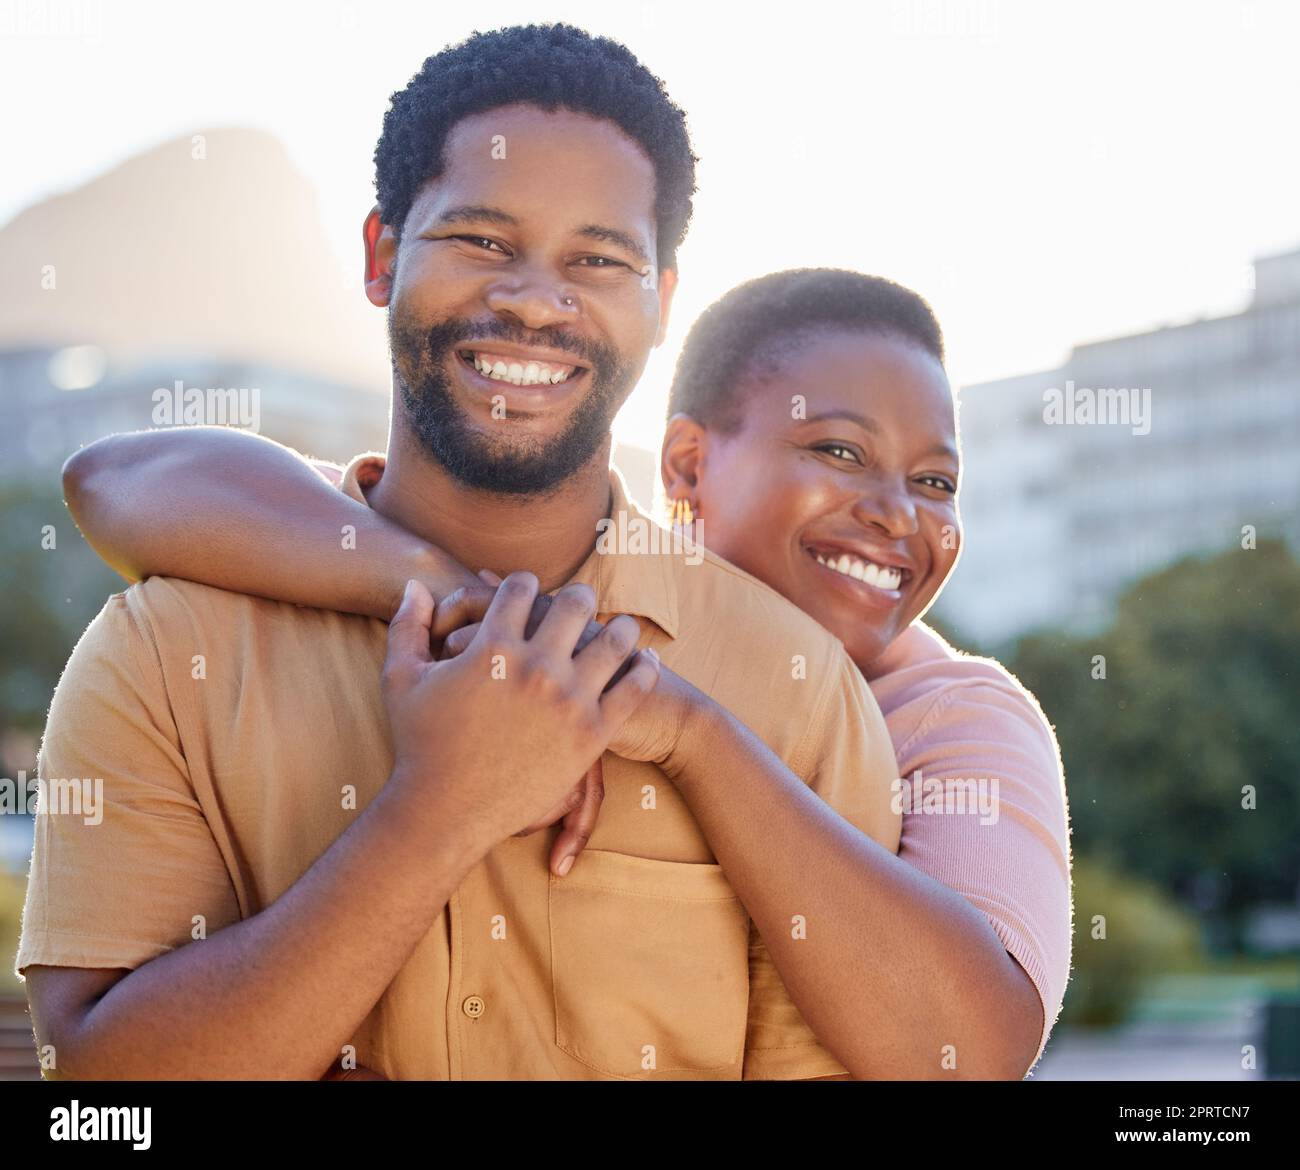 Porträt, glücklich und ein Paar lächelt mit Umarmung, während es in der Stadt zu einem Date im Sommer ist. afroamerikanischer Mann und Frau, die sich mit Freude, Liebe und Glück in einer gesunden Beziehung oder Ehe verbinden Stockfoto